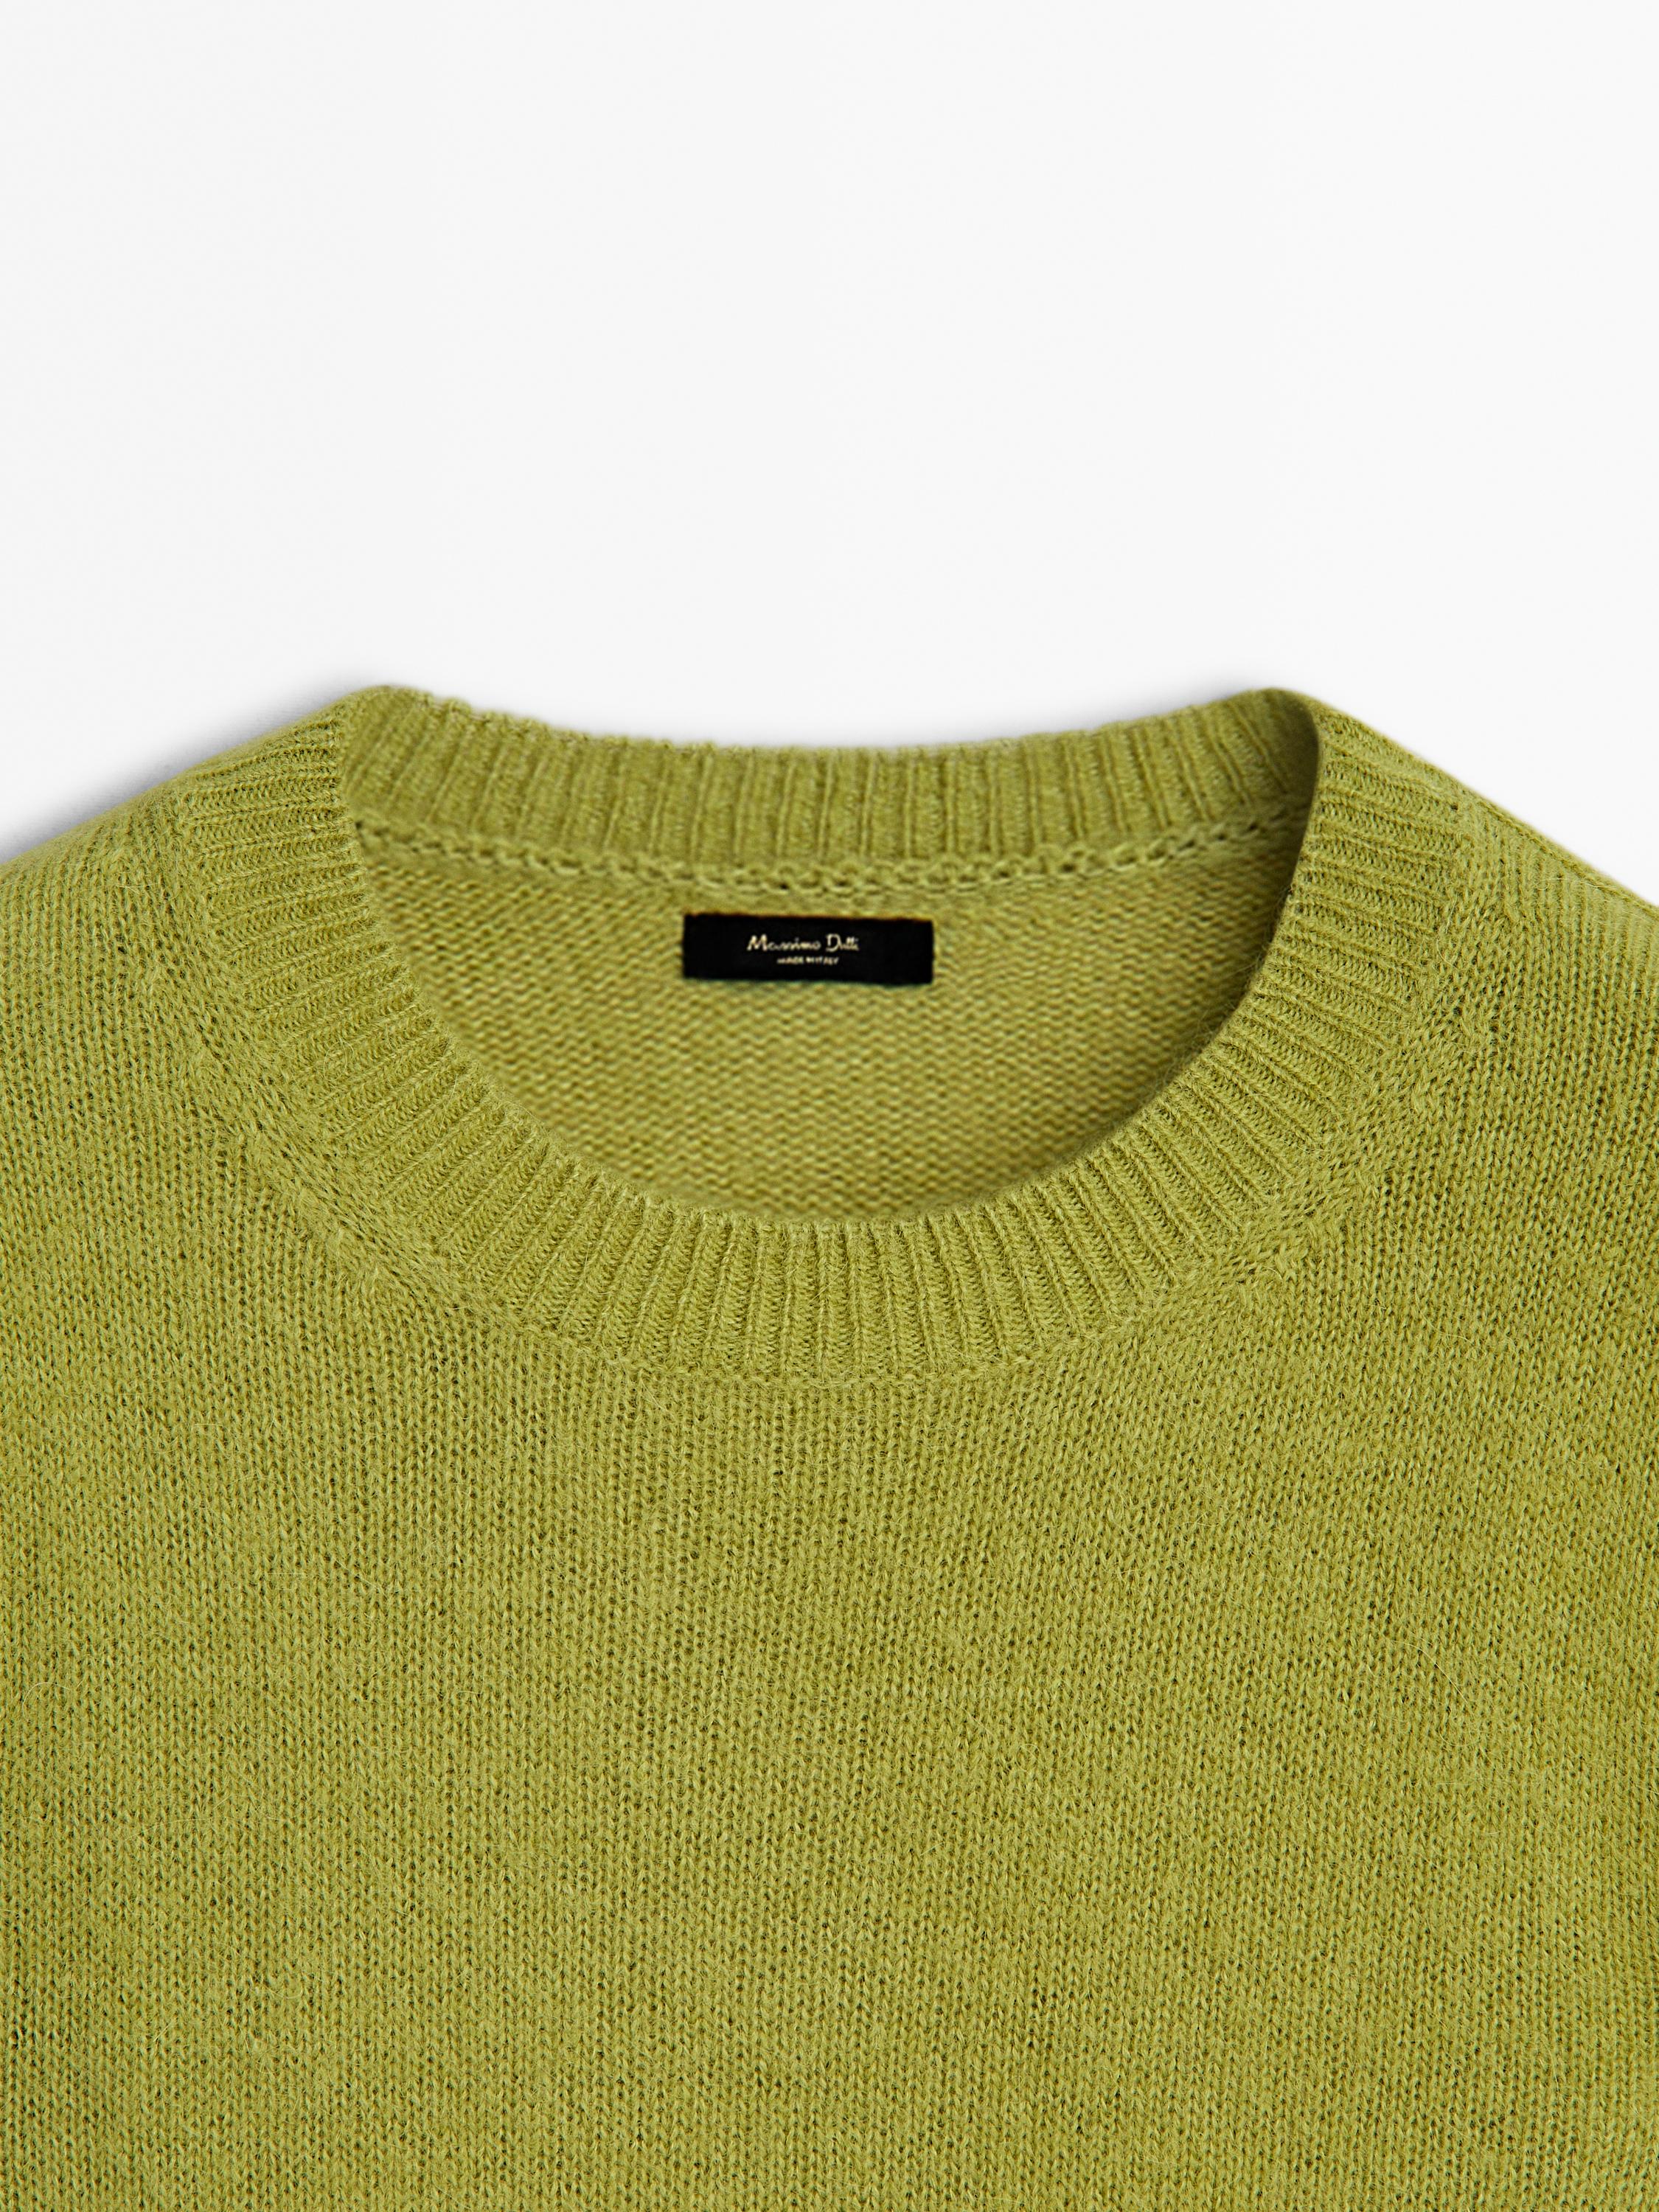 Crew neck knit sweater - Beige